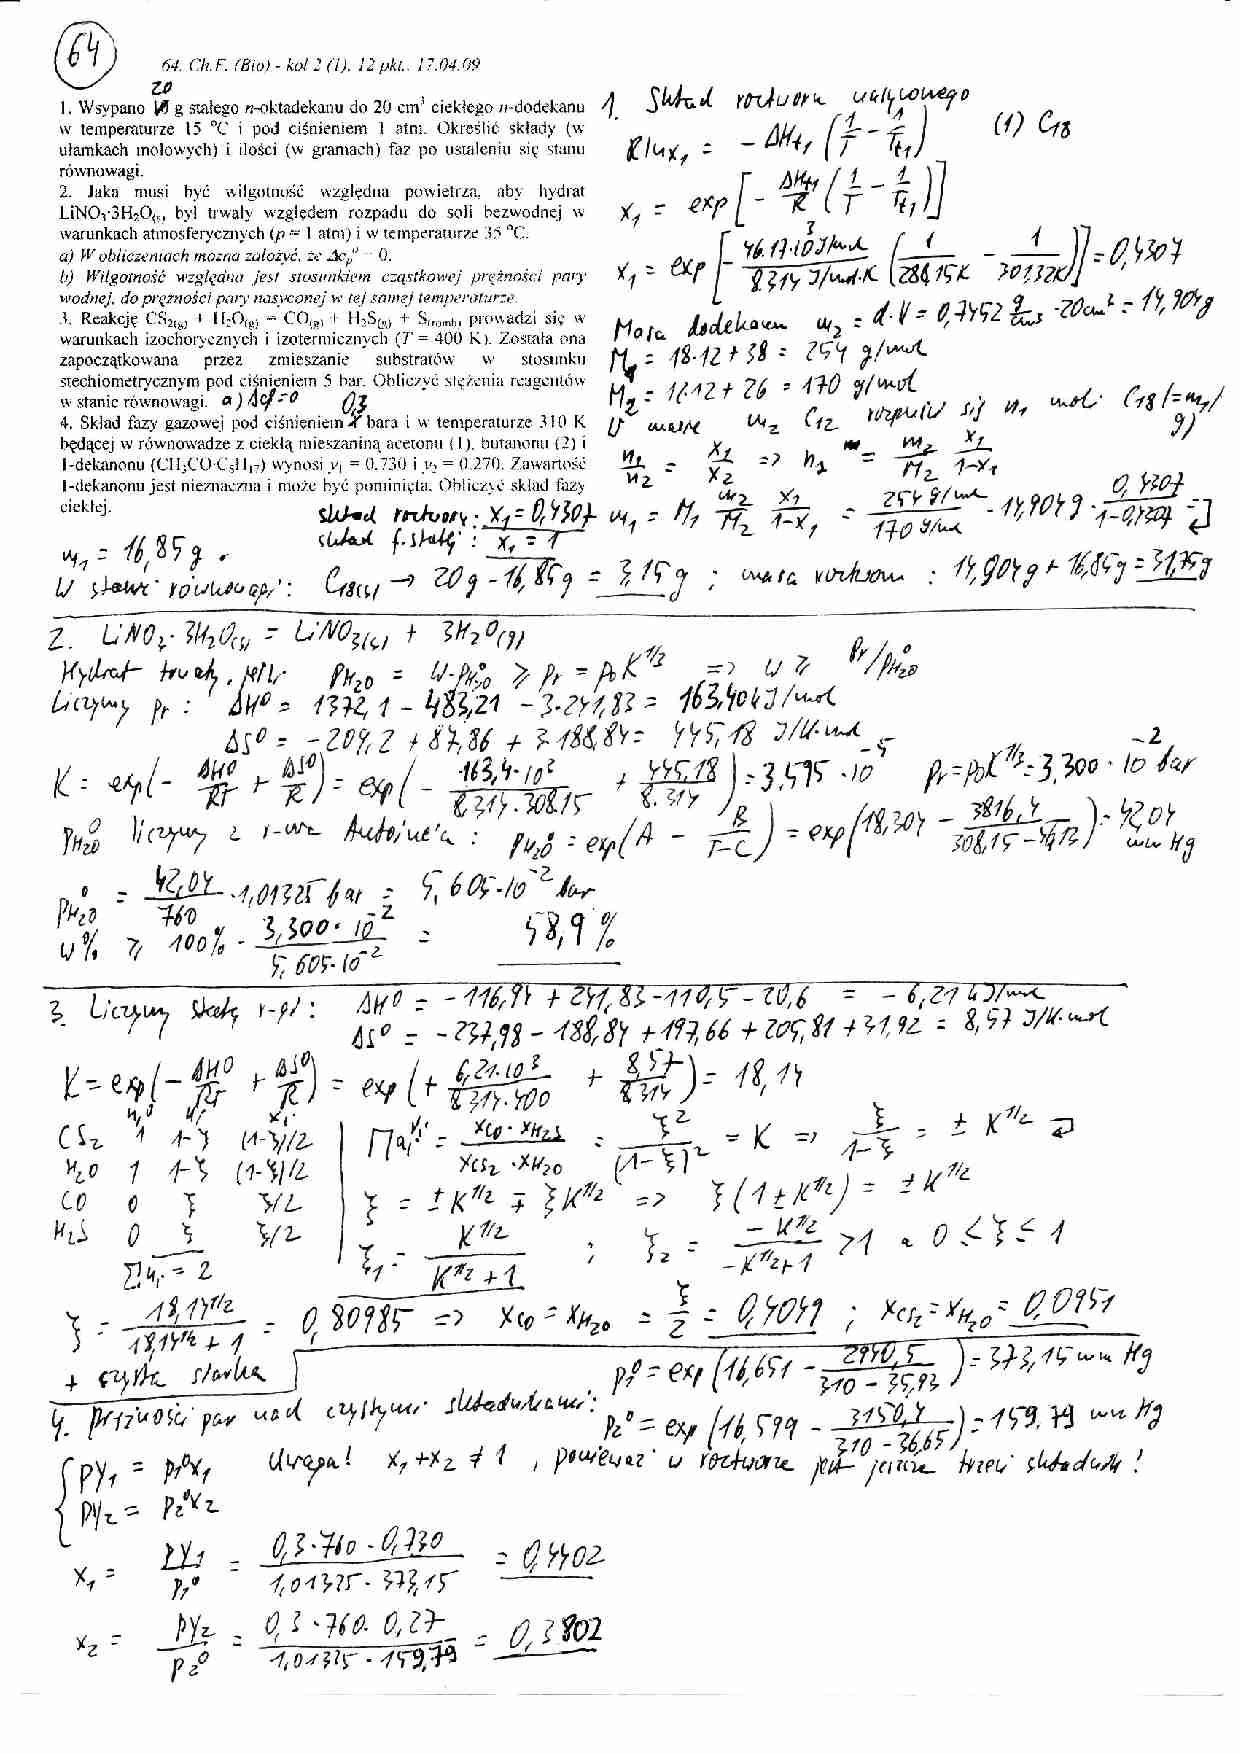 Termodynamika techniczna i chemiczna - wykład - strona 1